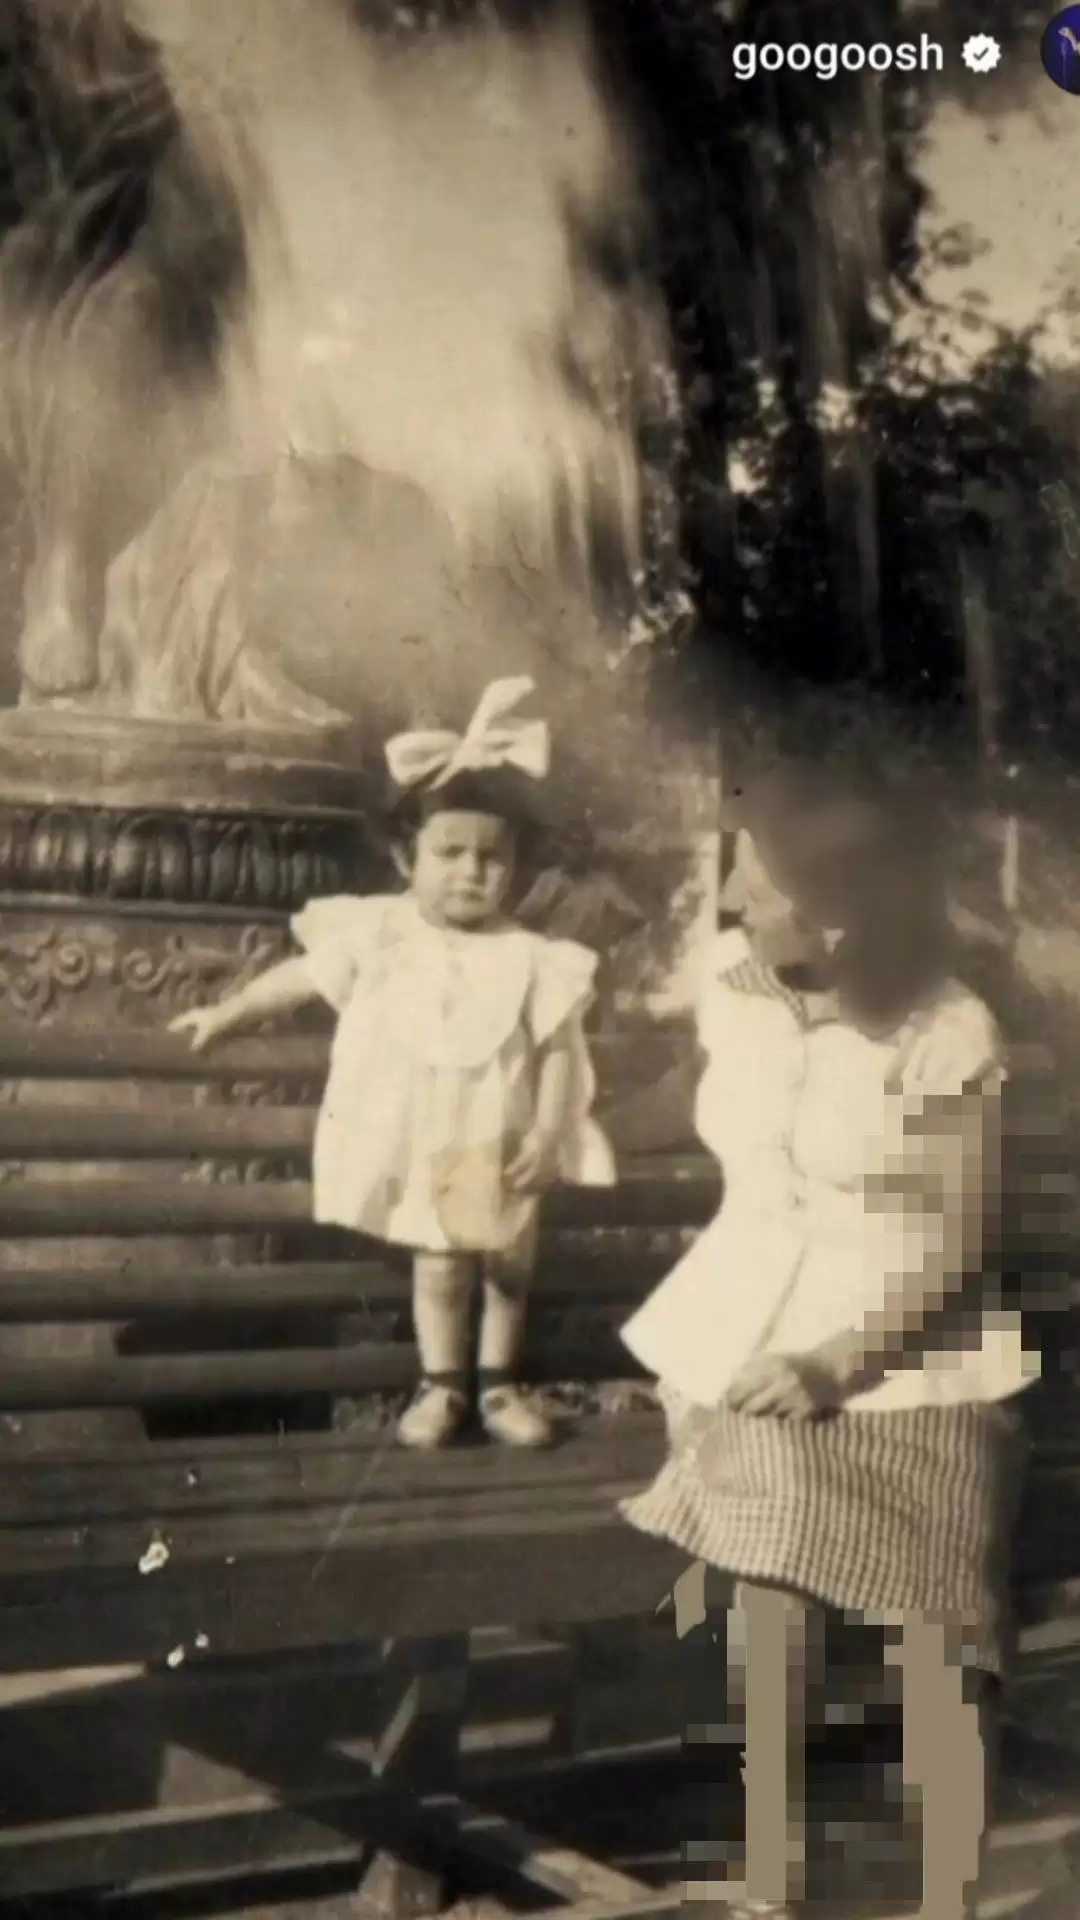 زیبایی دیدنی مادر گوگوش در تهران قبل از انقلاب + عکس